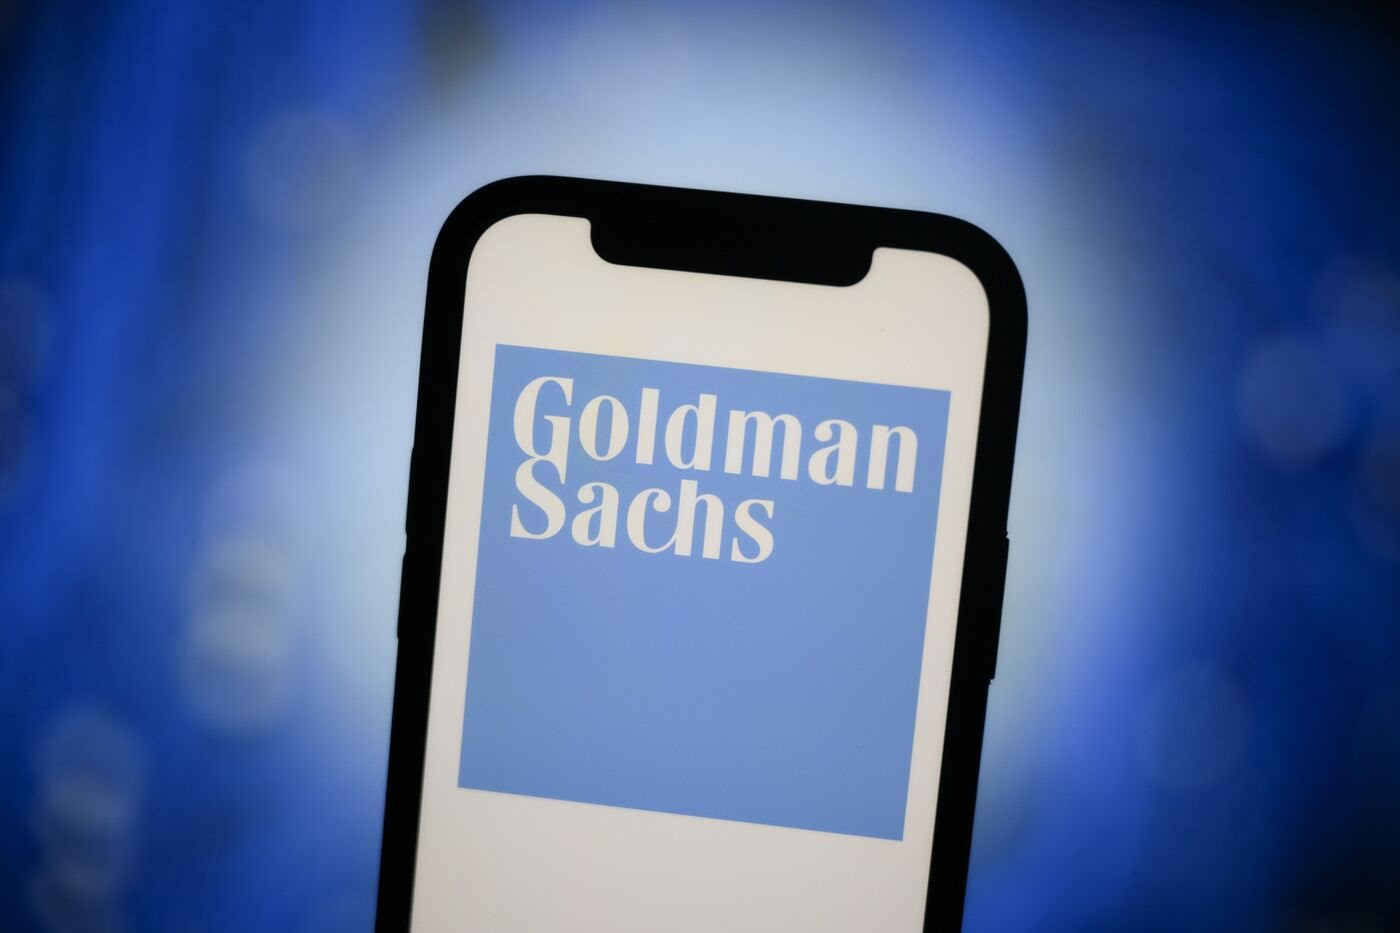 Goldman Sachs sắp chấm dứt hợp tác với Apple, tham vọng ‘nuốt chửng’ ngành ngân hàng của nhà Táo khuyết lâm nguy - Ảnh 2.